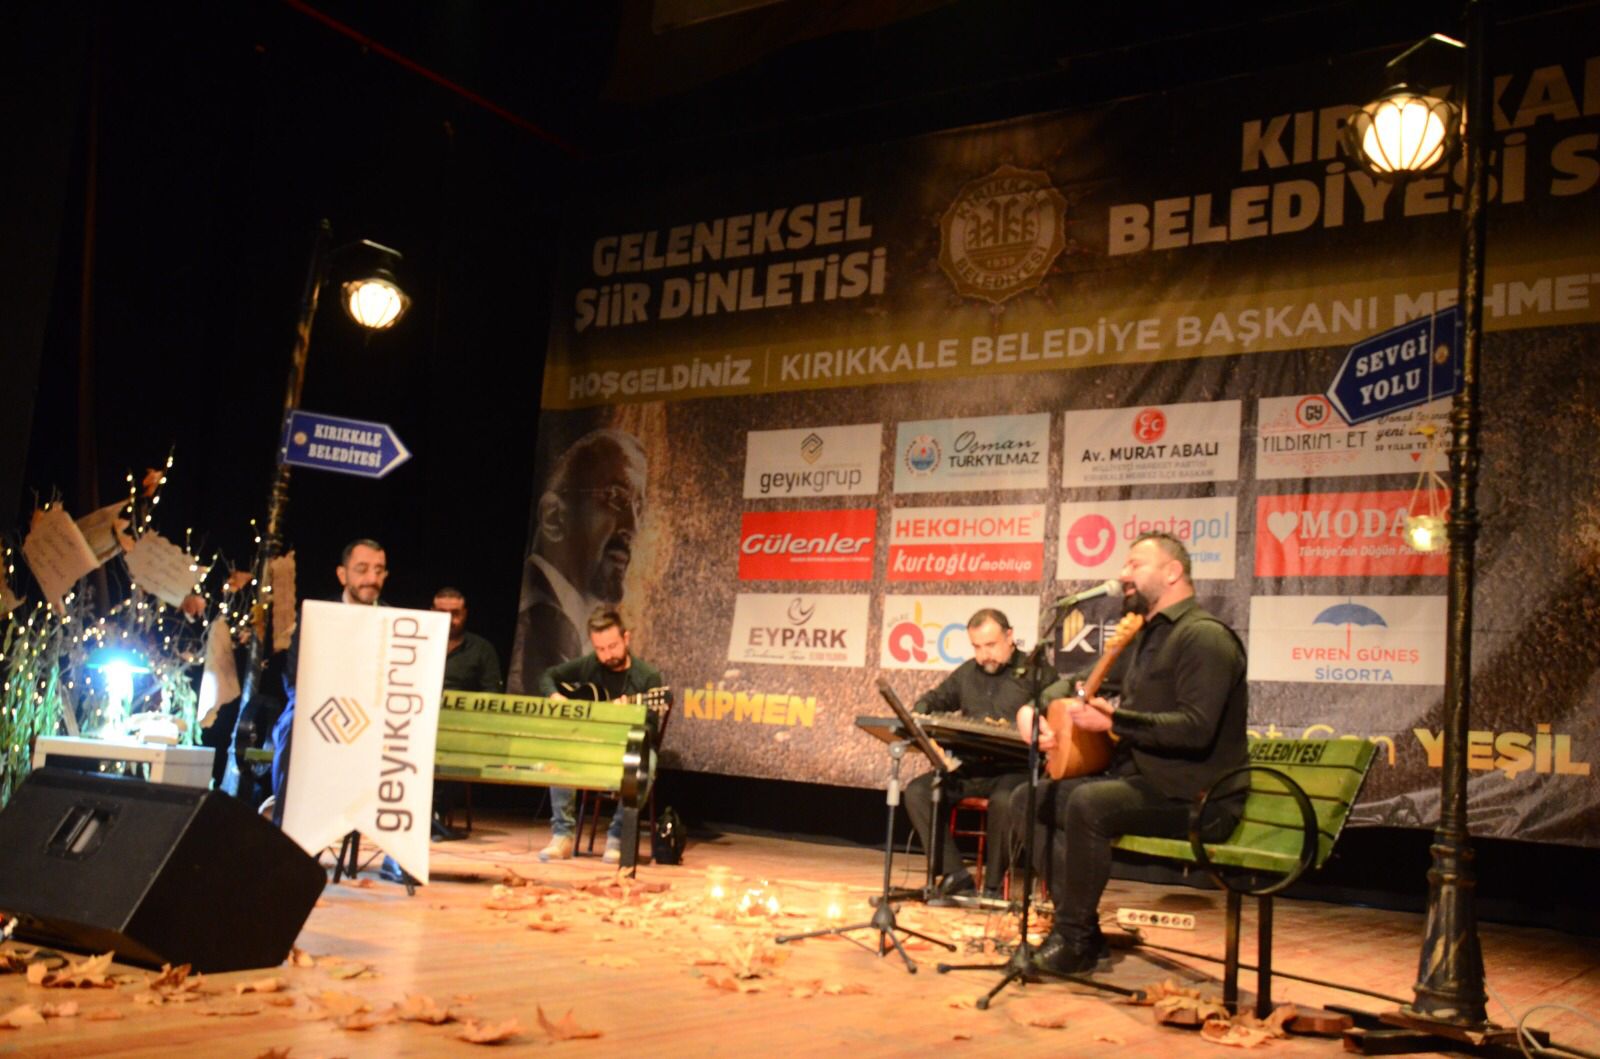 Kırıkkale Belediyesi, Şiir Dinletisi Düzenlendi 